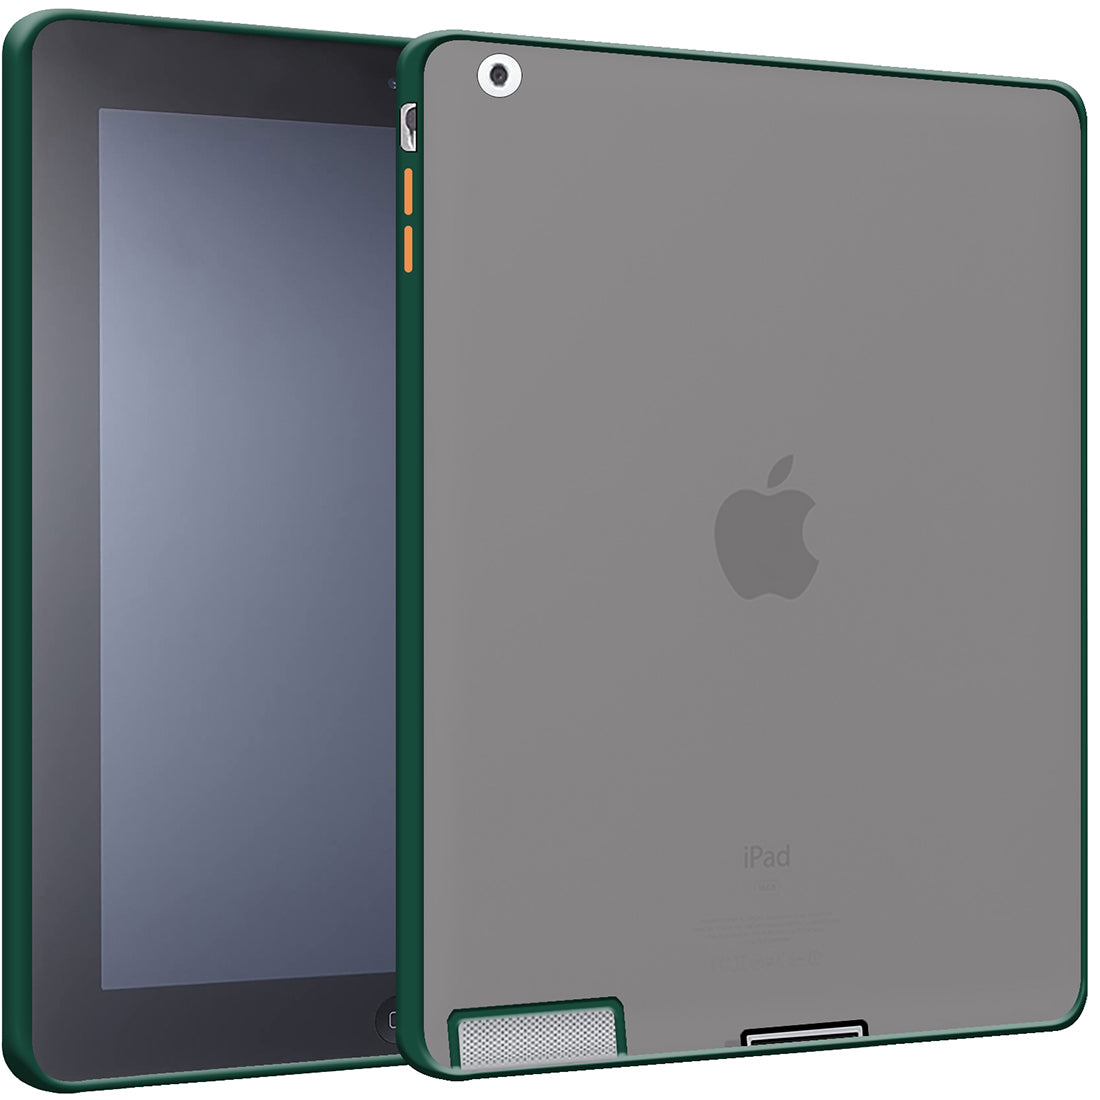 Apple iPad 2/3/4 (9.7 inch)